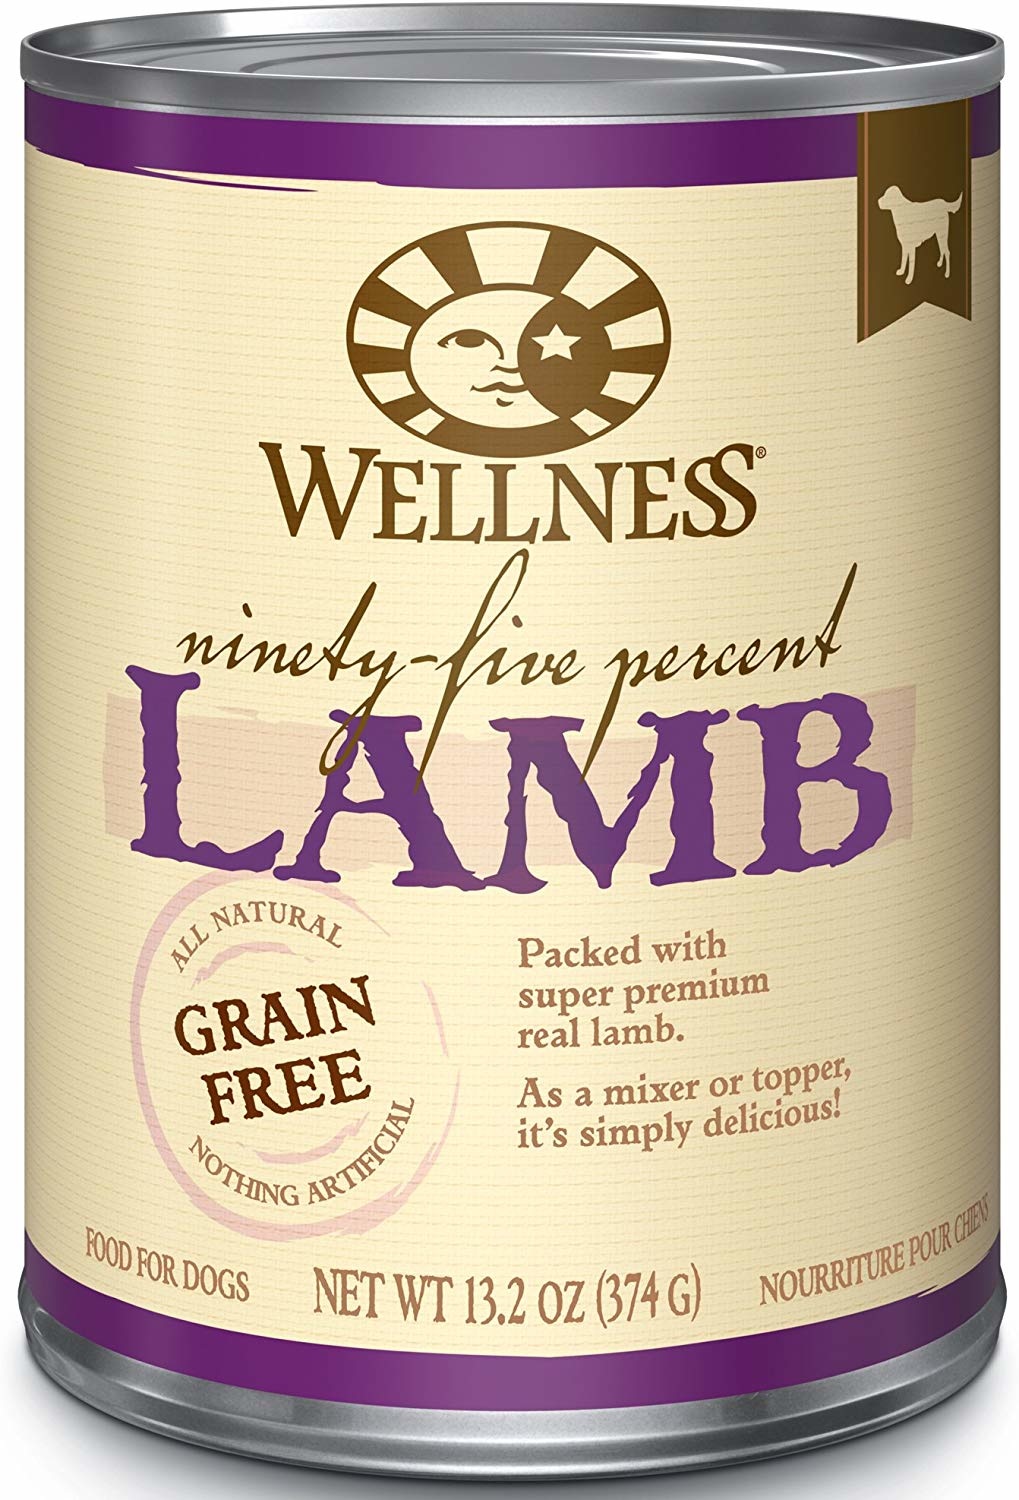 WellPet Wellness 95% Lamb 12.5 oz